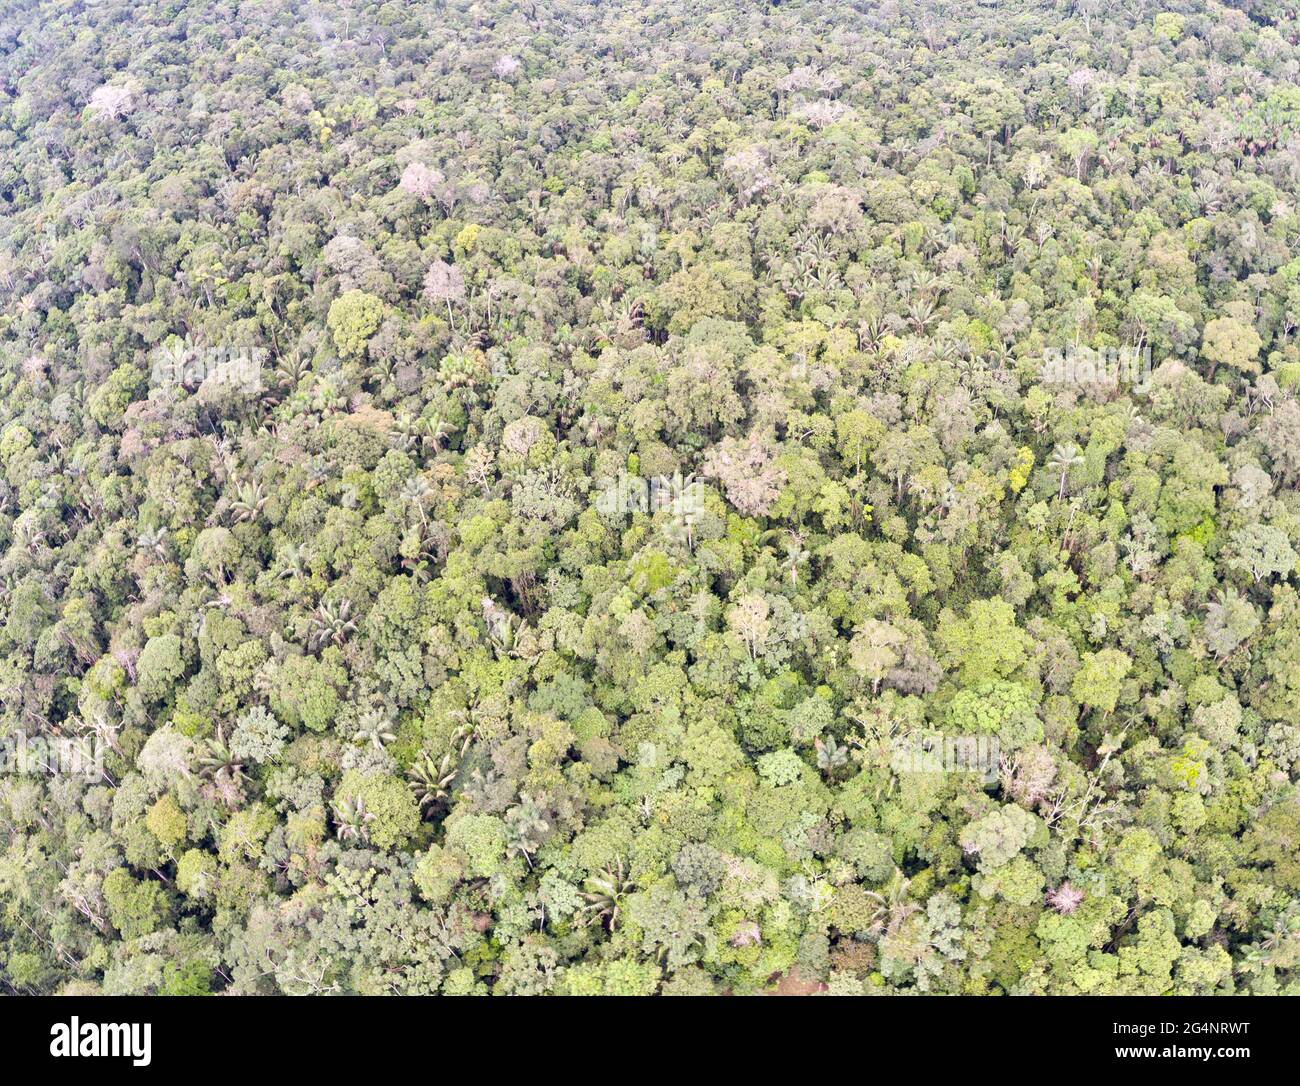 Guardando verso il basso fino al baldacchino della foresta pluviale tropicale incontaminata vicino a Rio Shiripuno nell'Amazzonia ecuadoriana. Foto Stock